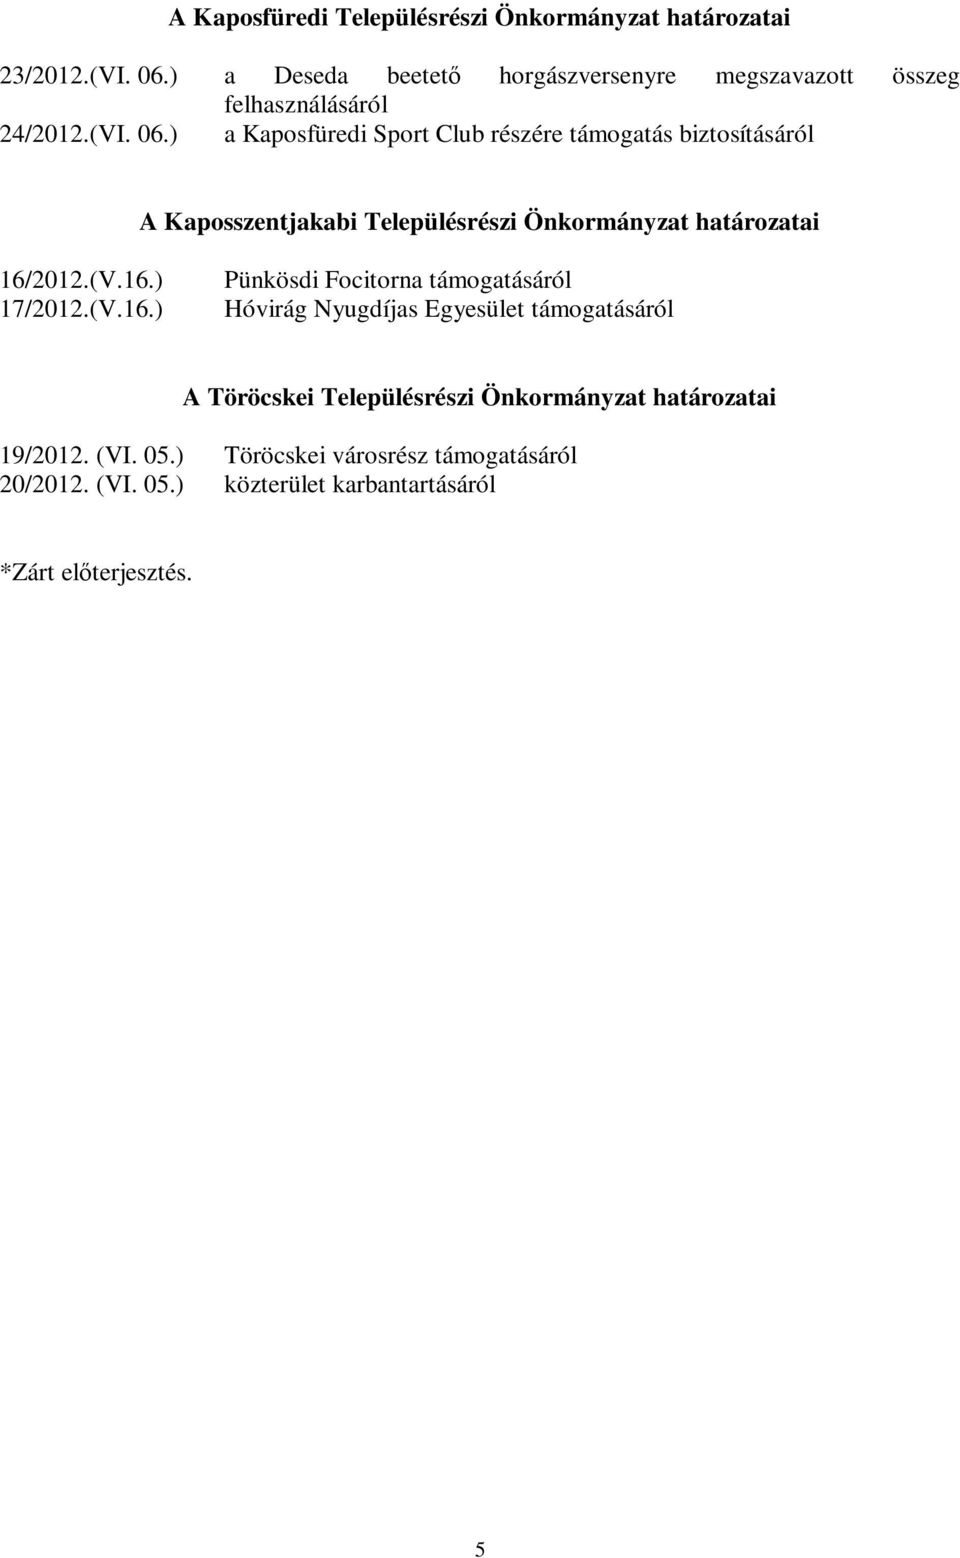 ) a Kaposfüredi Sport Club részére támogatás biztosításáról A Kaposszentjakabi Településrészi Önkormányzat határozatai 16/2012.(V.16.) 17/2012.